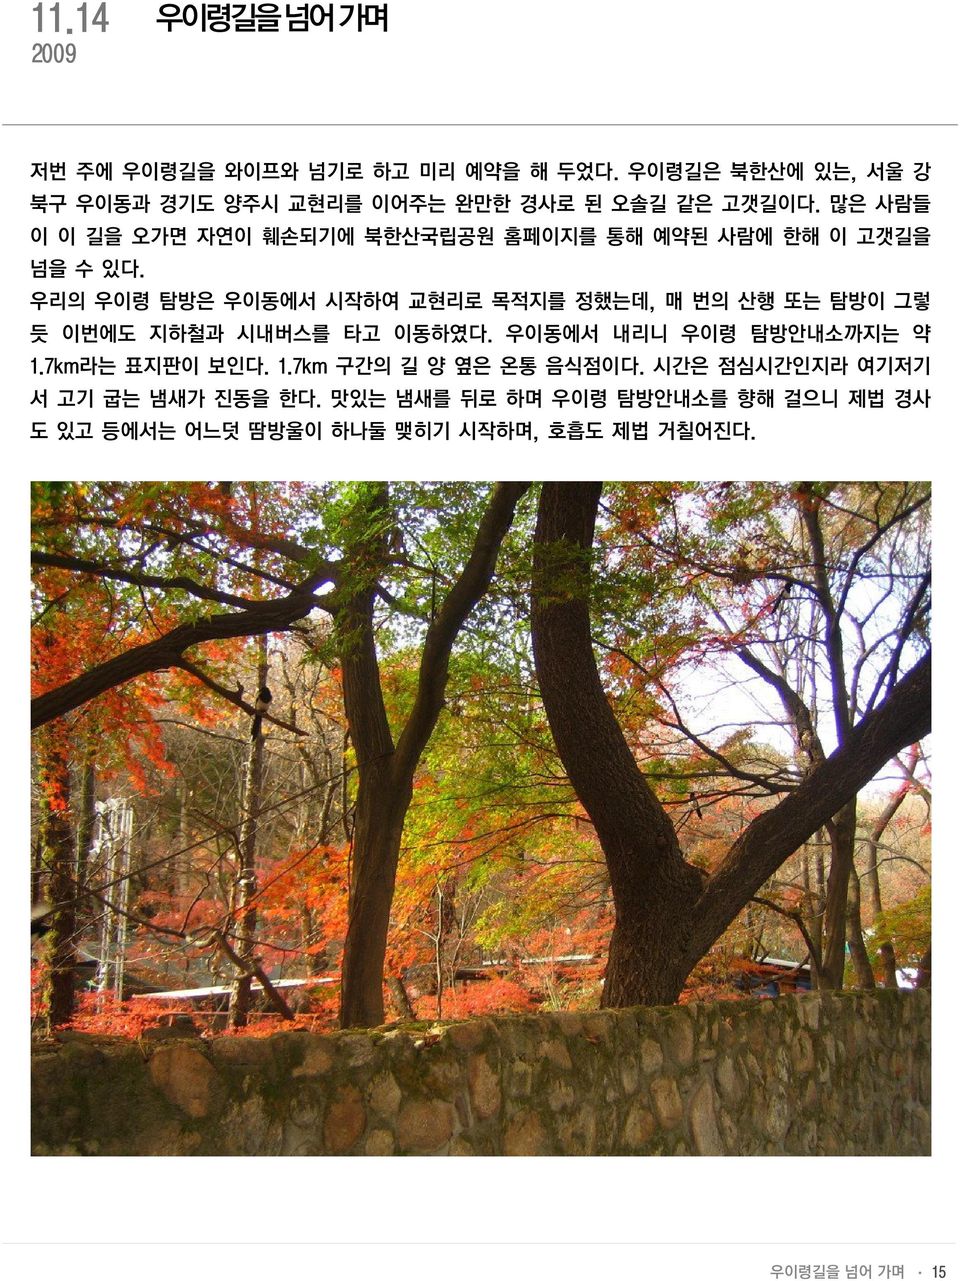 많은 사람들 이 이 길을 오가면 자연이 훼손되기에 북한산국립공원 홈페이지를 통해 예약된 사람에 한해 이 고갯길을 넘을 수 있다.